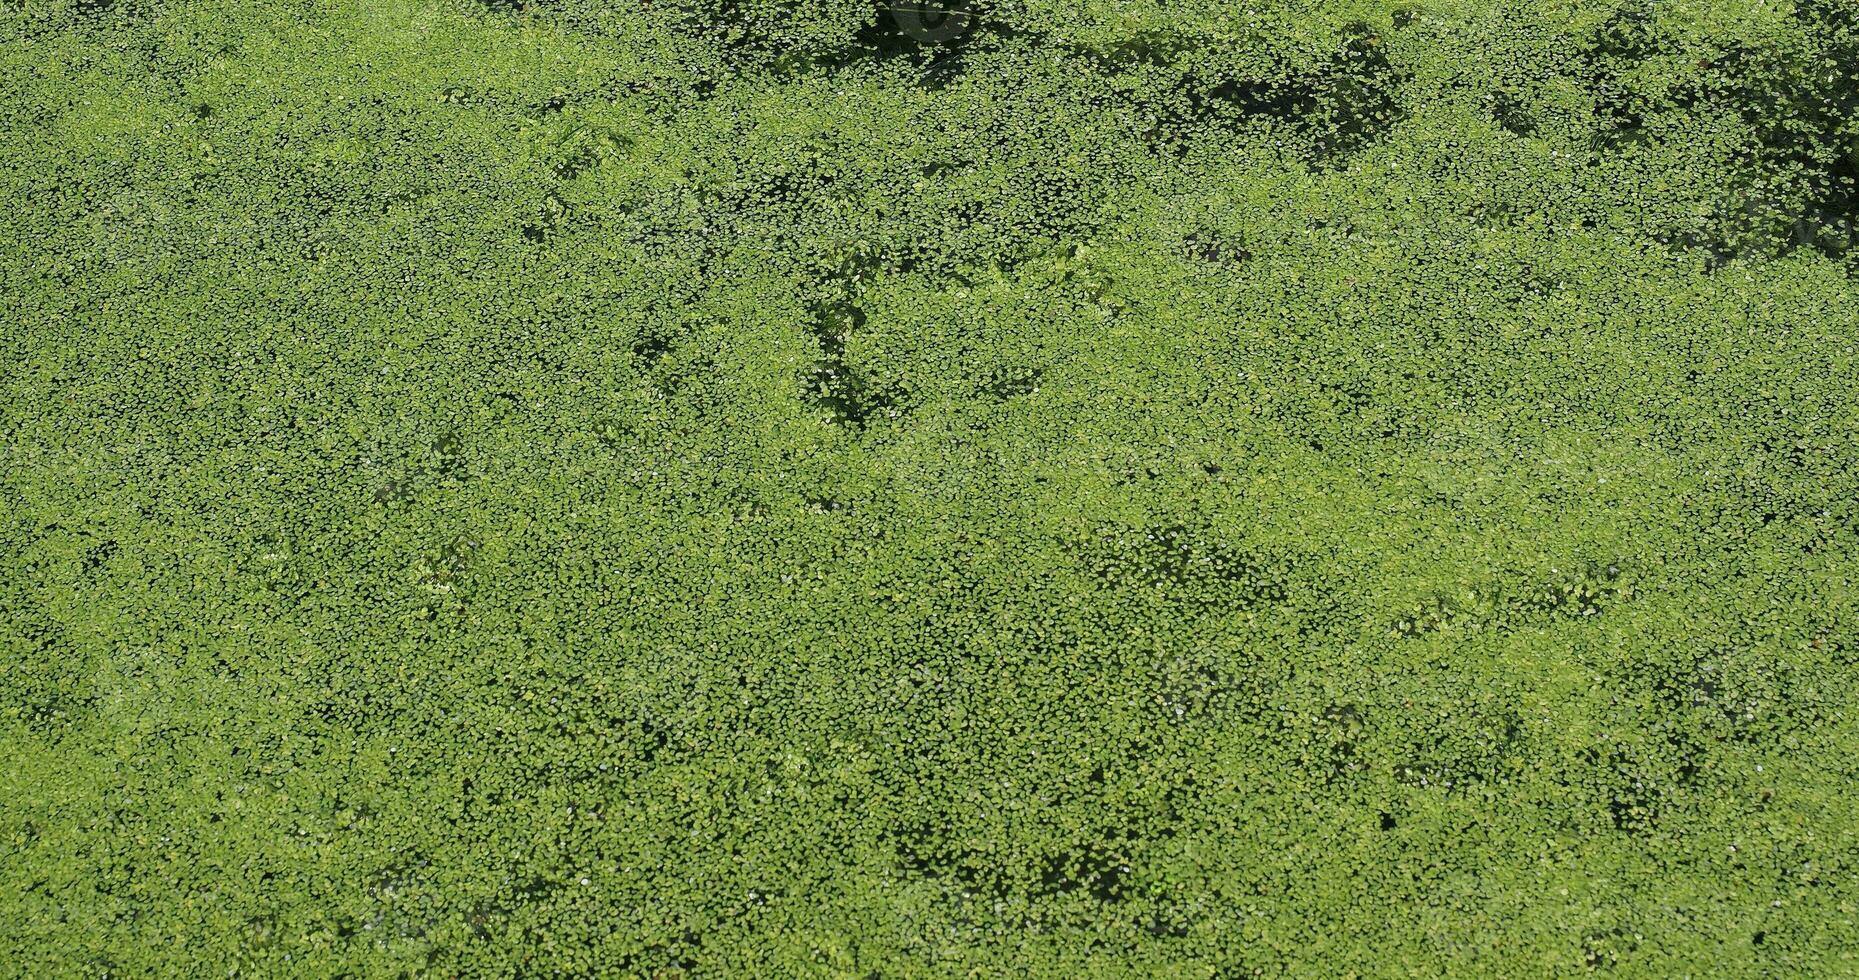 Algen schwimmen auf dem Wasser foto